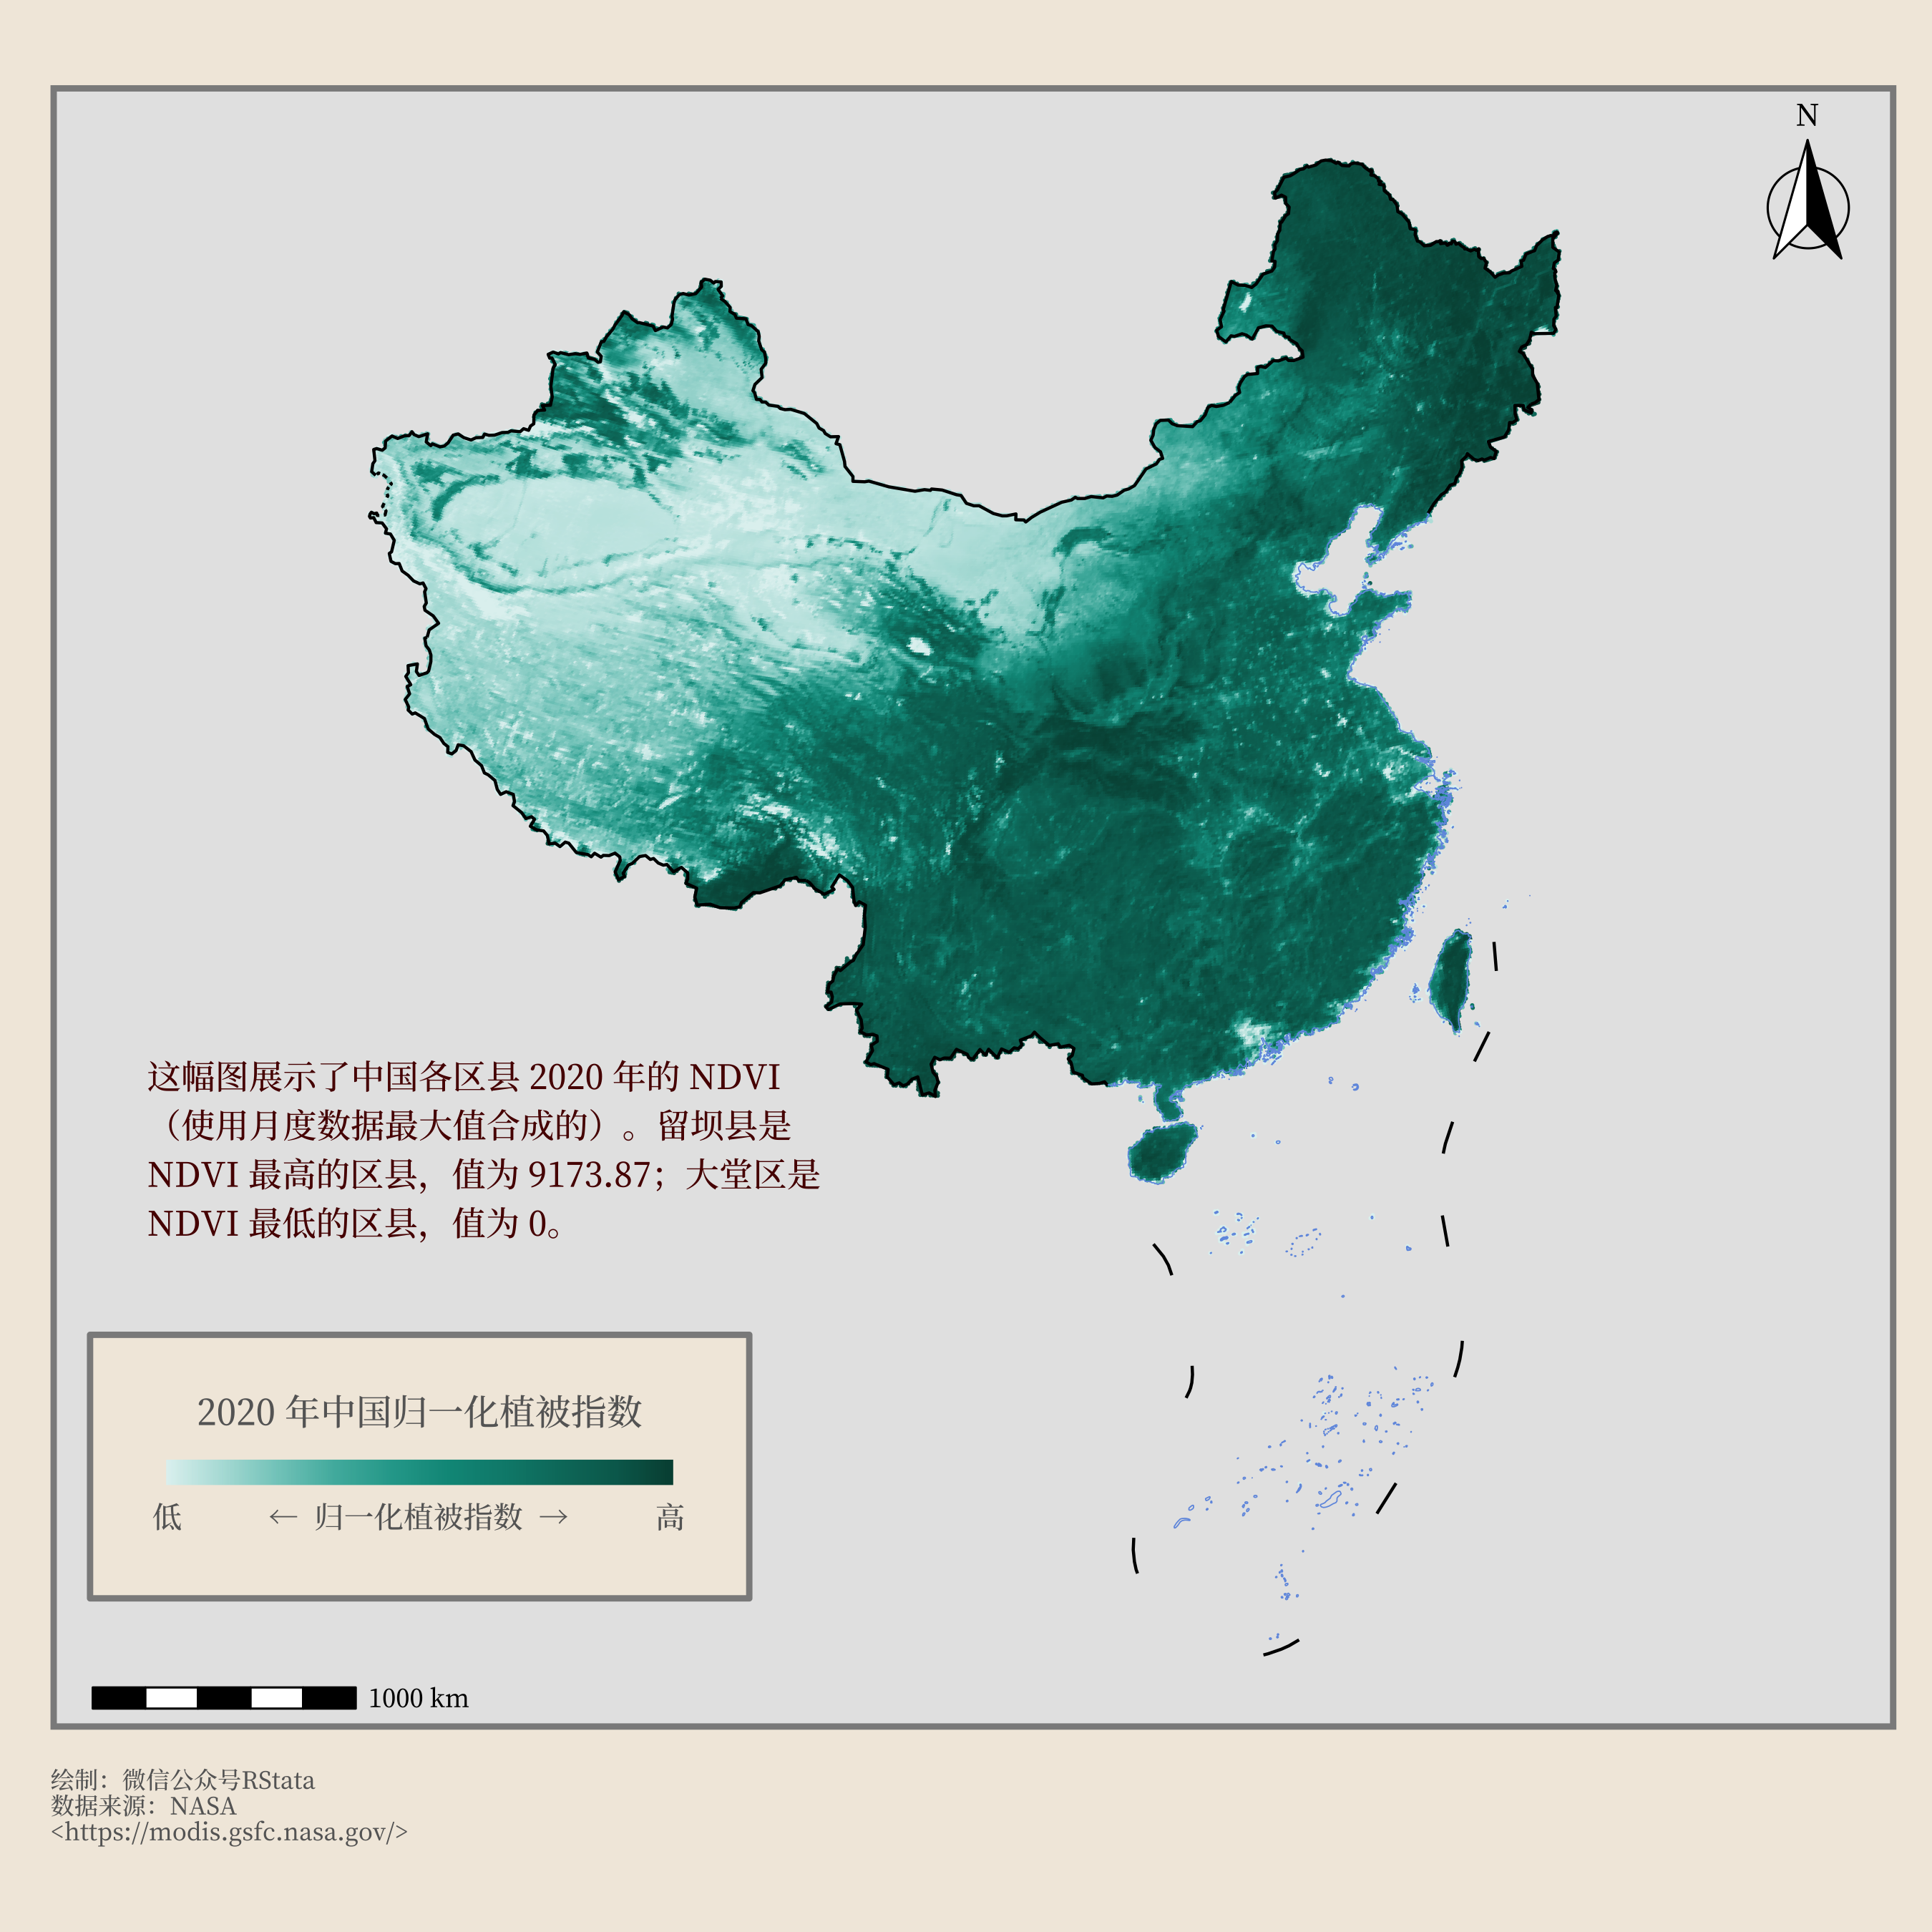 2020 年中国各地归一化植被指数